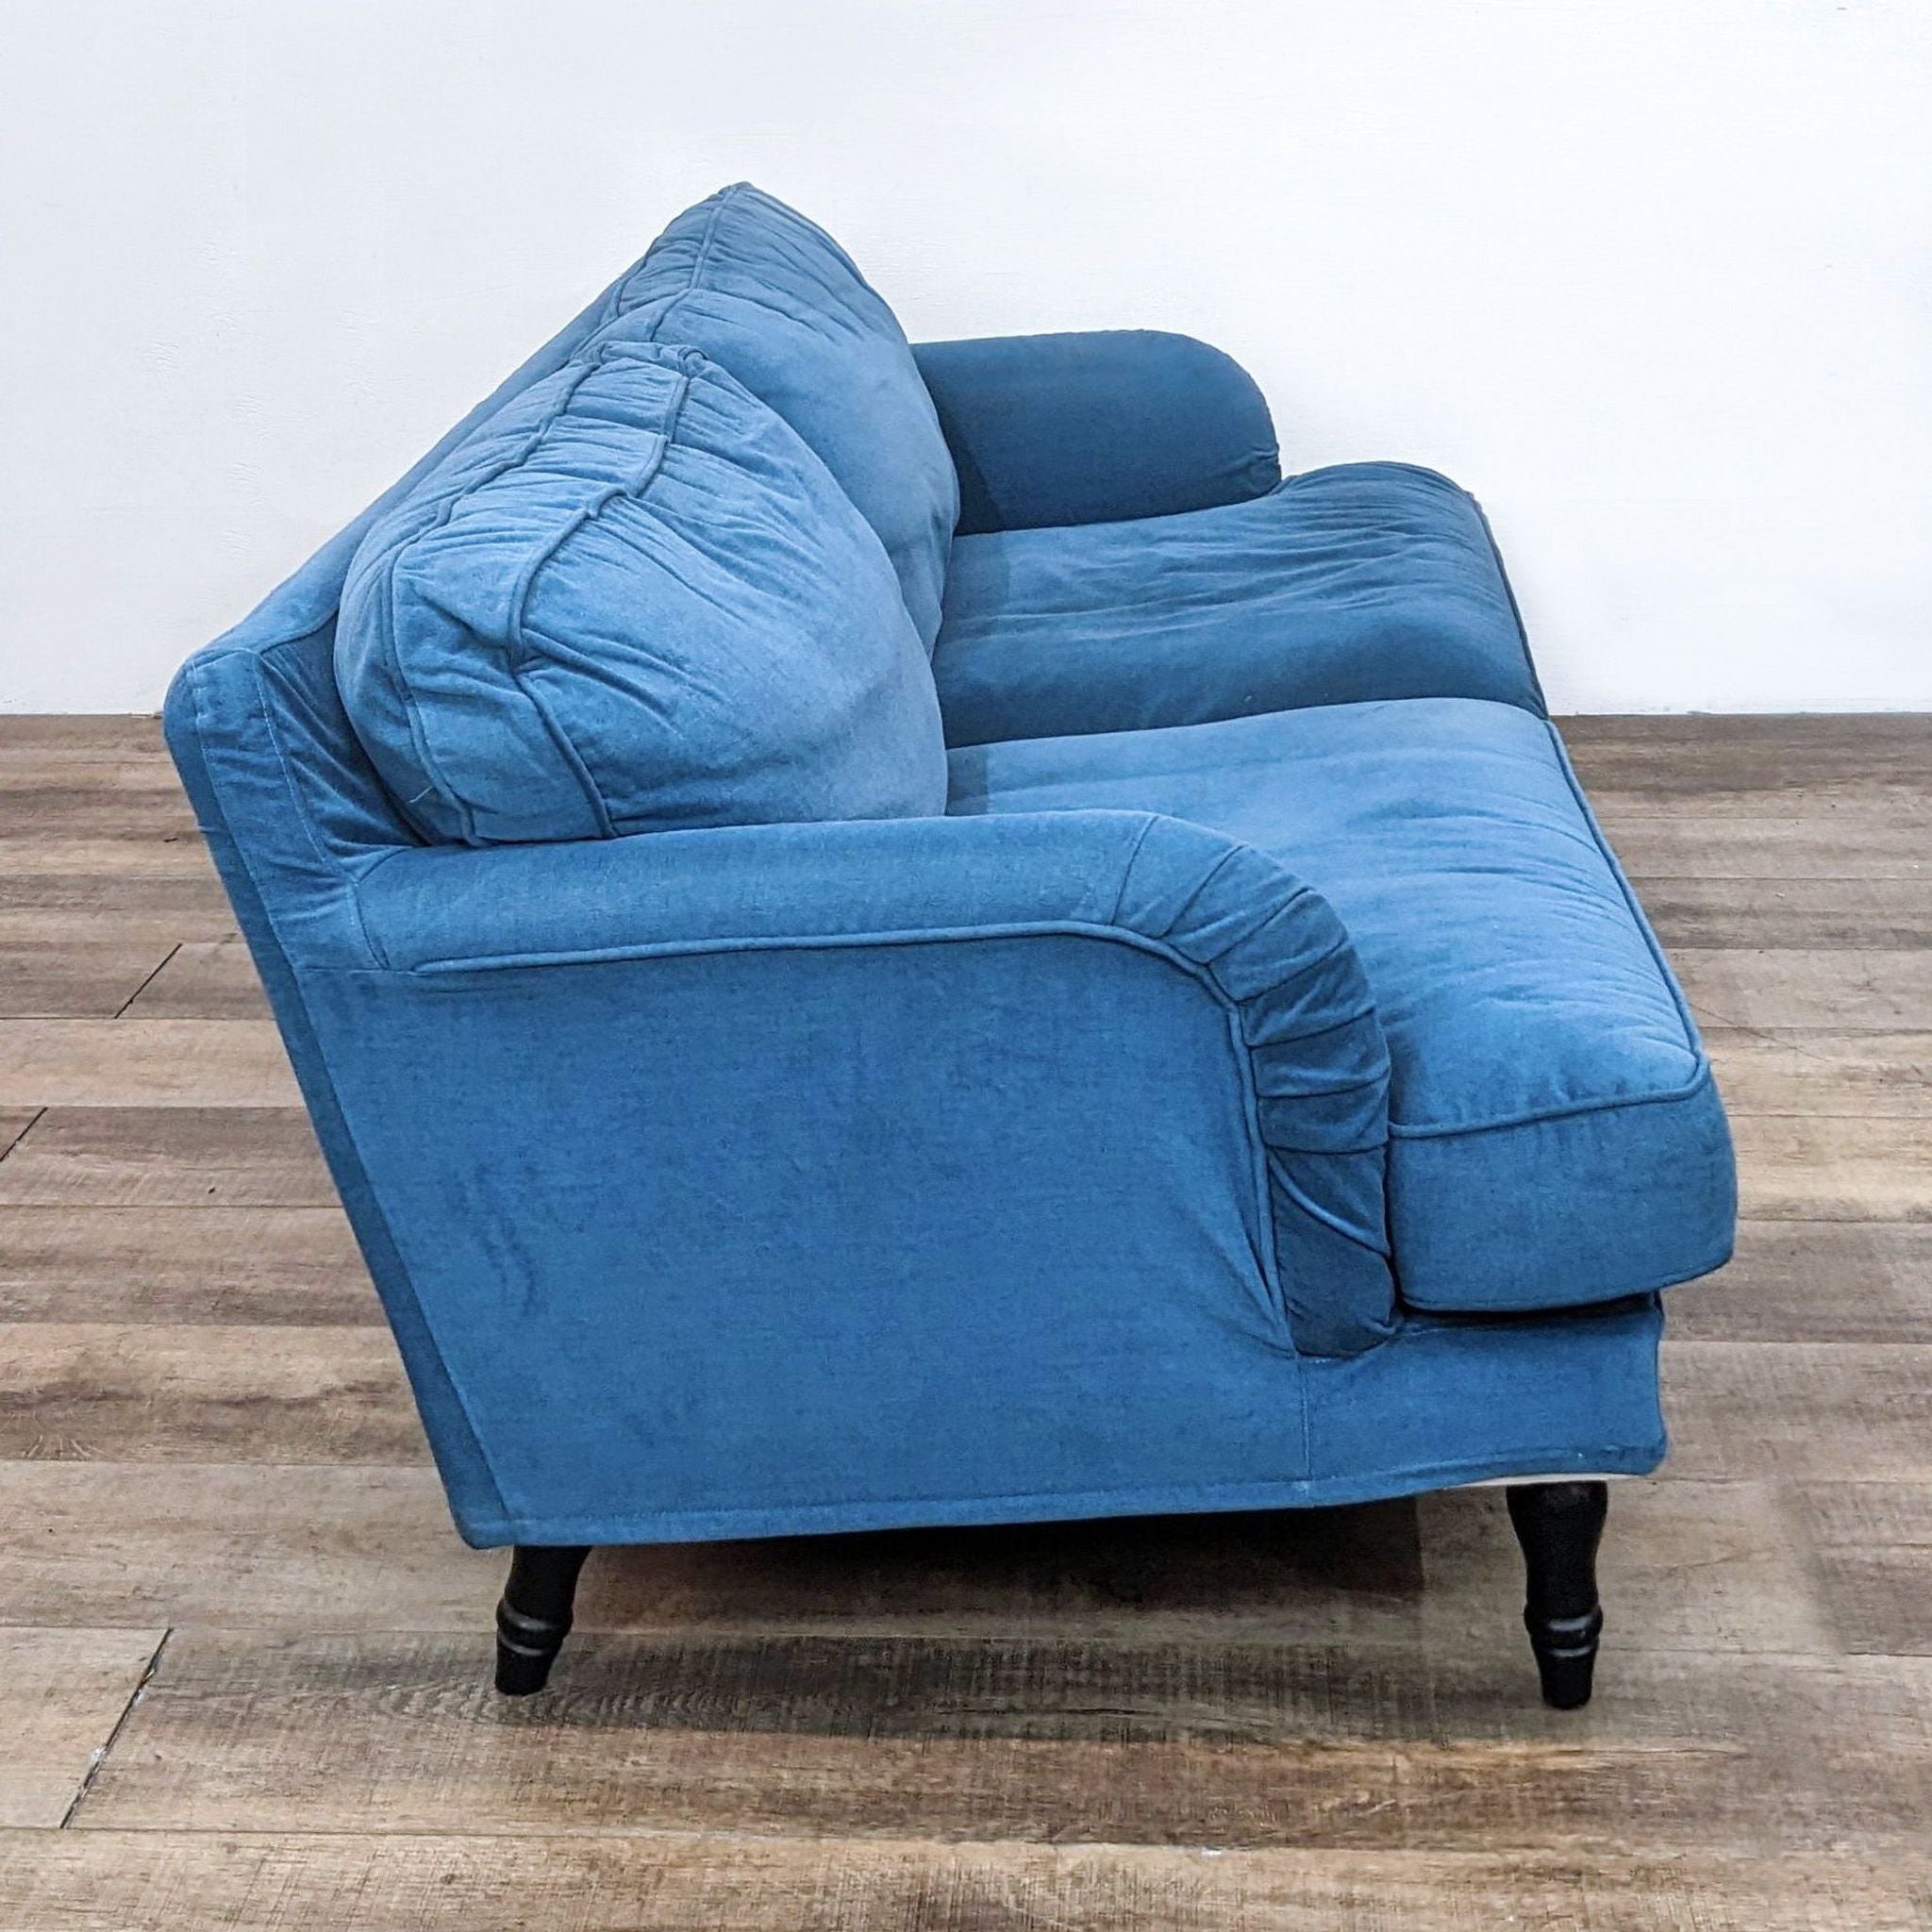 Ikea Blue Sofa